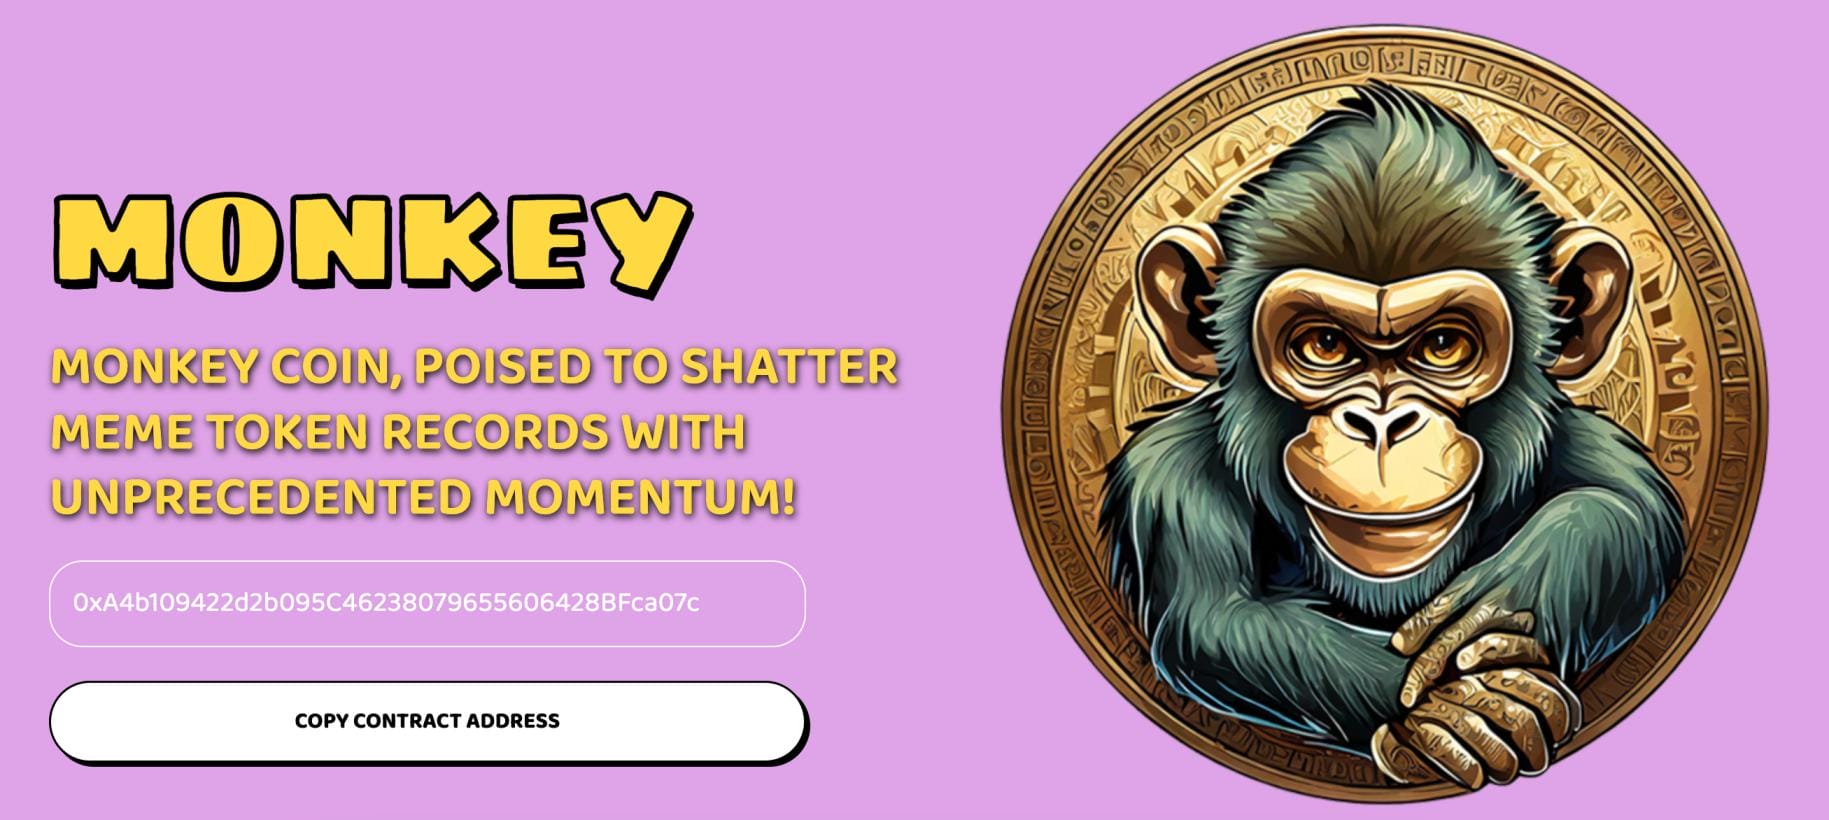 Monkey Coin ICO